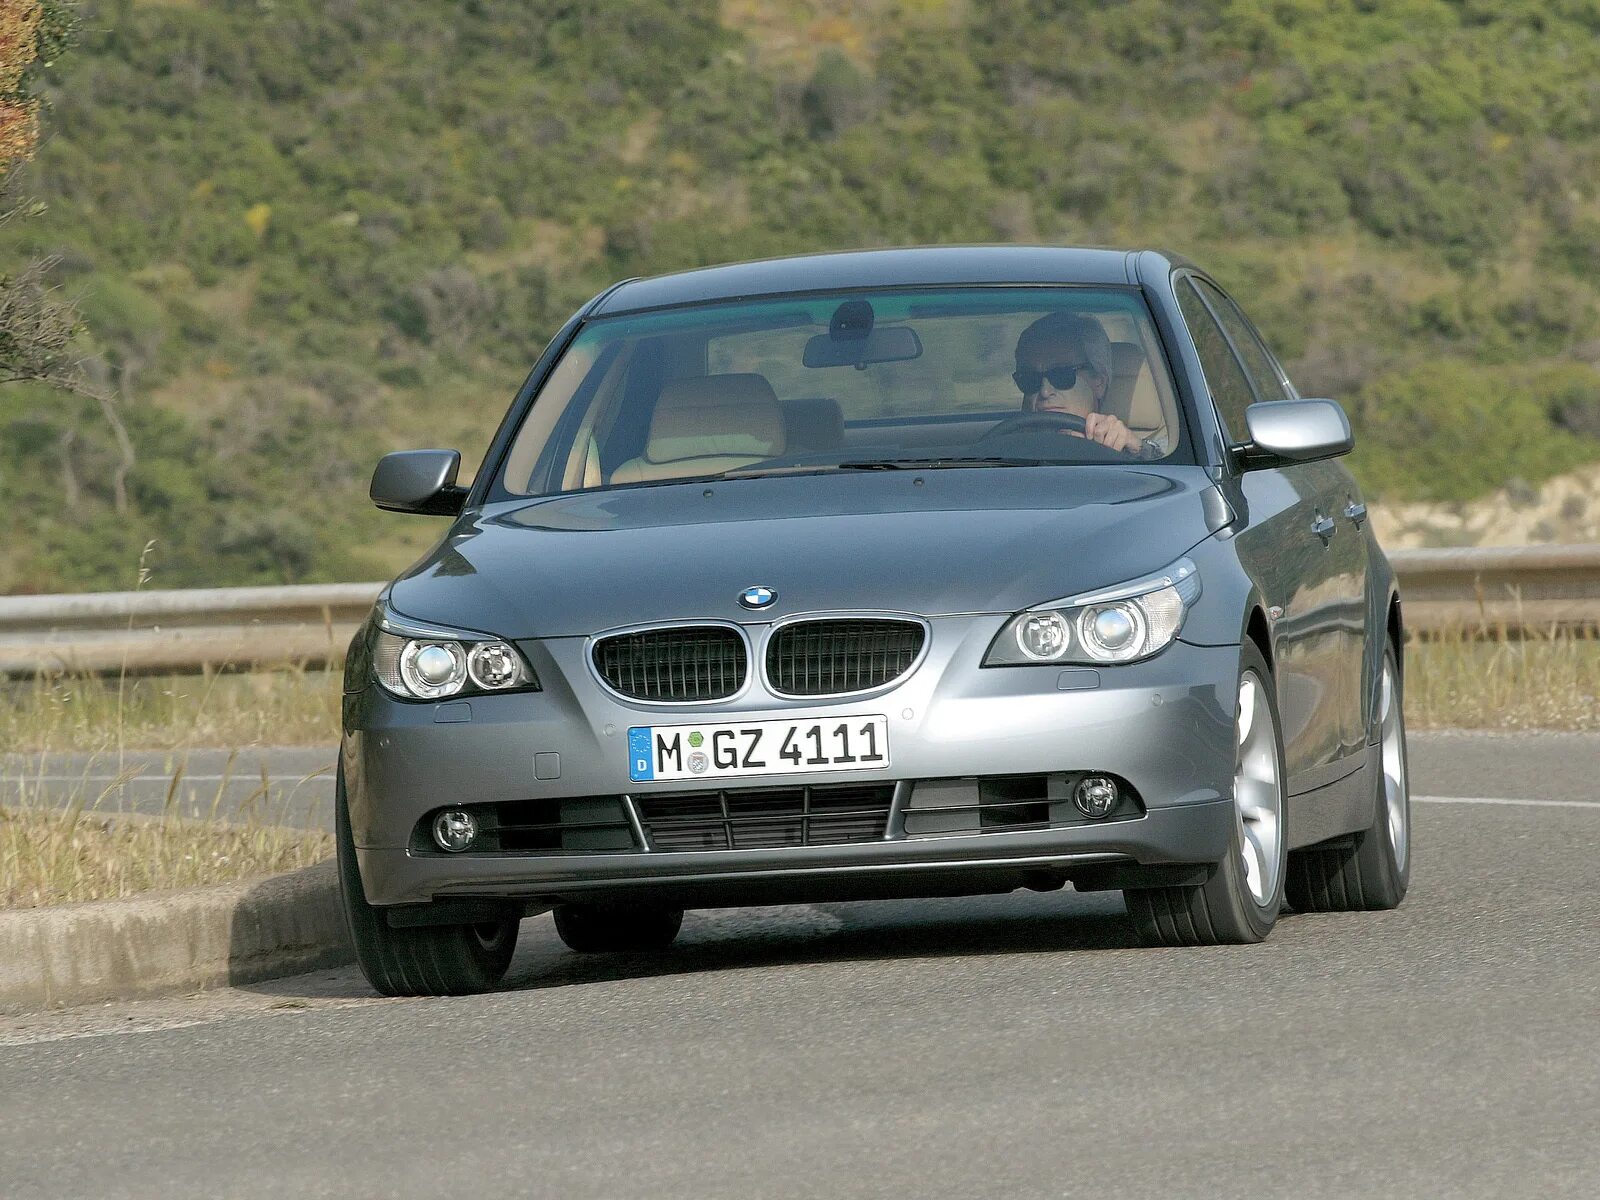 Bmw 5 series e60. BMW 5 e60 2004. BMW 5 e60 2003. BMW 5 e60 530d. BMW 5 Series e60 2003.